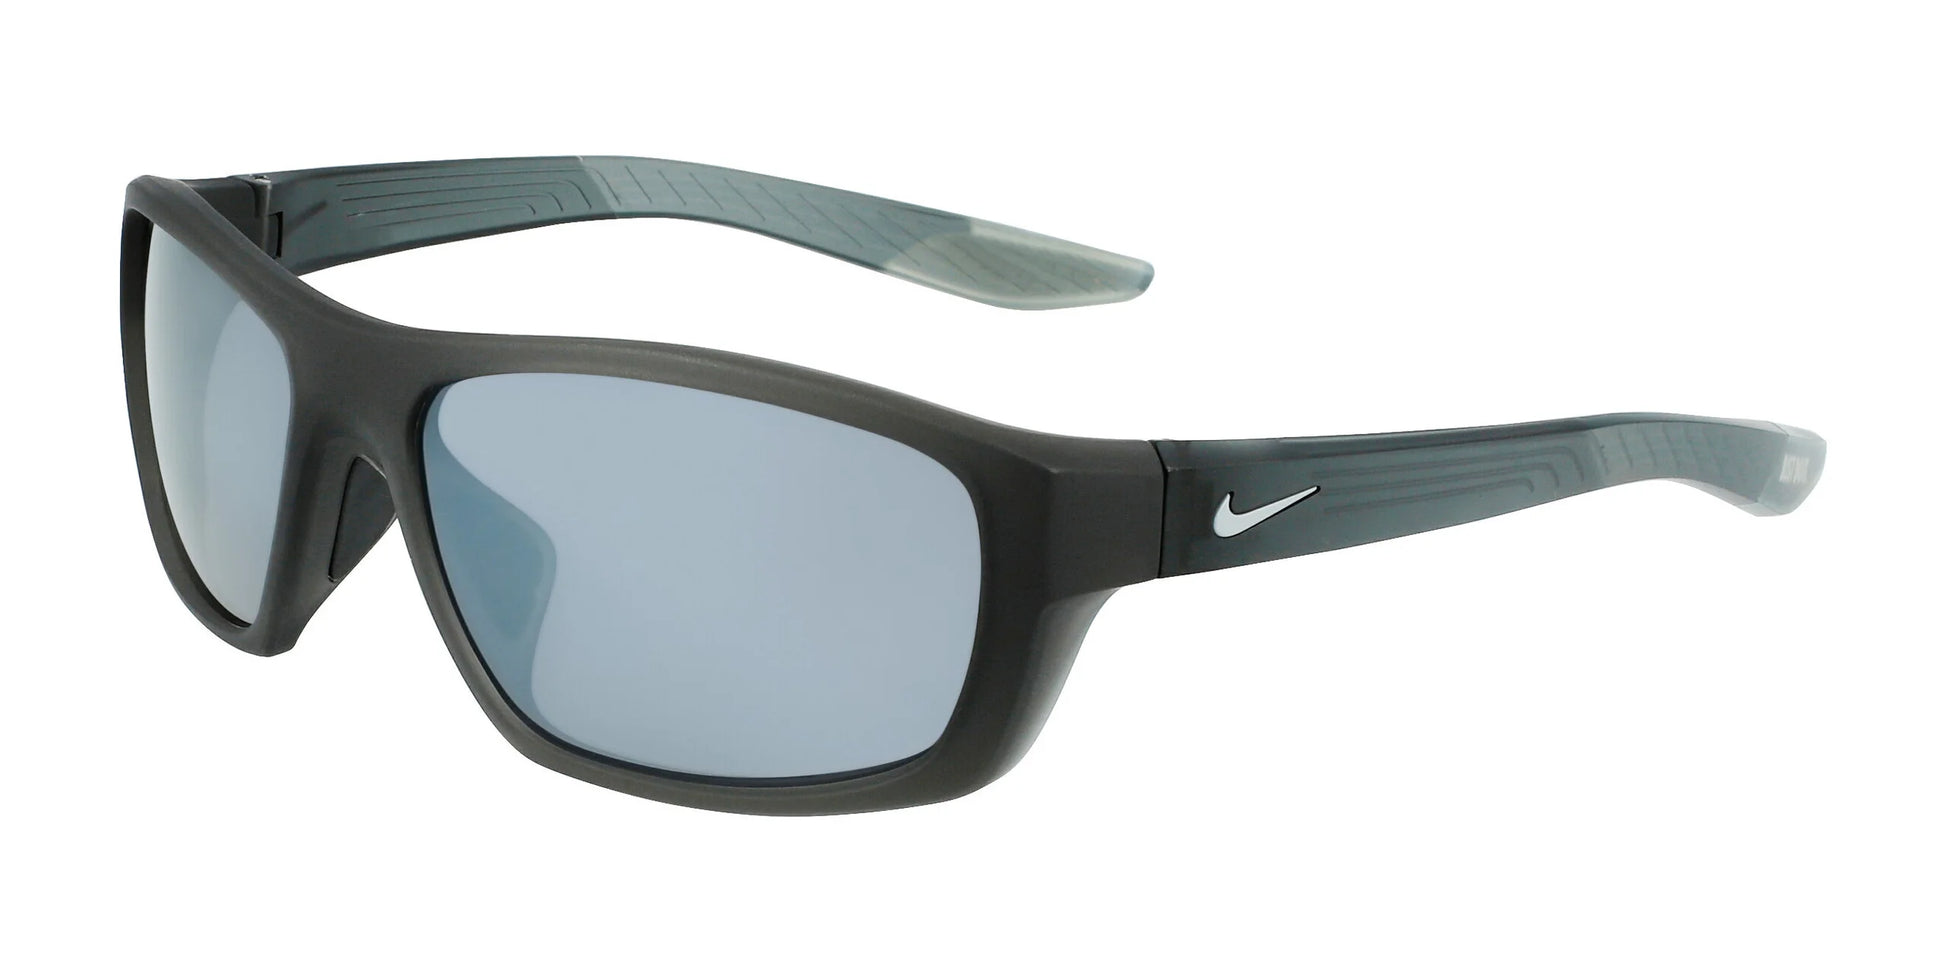 Nike BRAZEN BOOST FJ1975 Sunglasses Matte Anthracite / Grey / Silver F